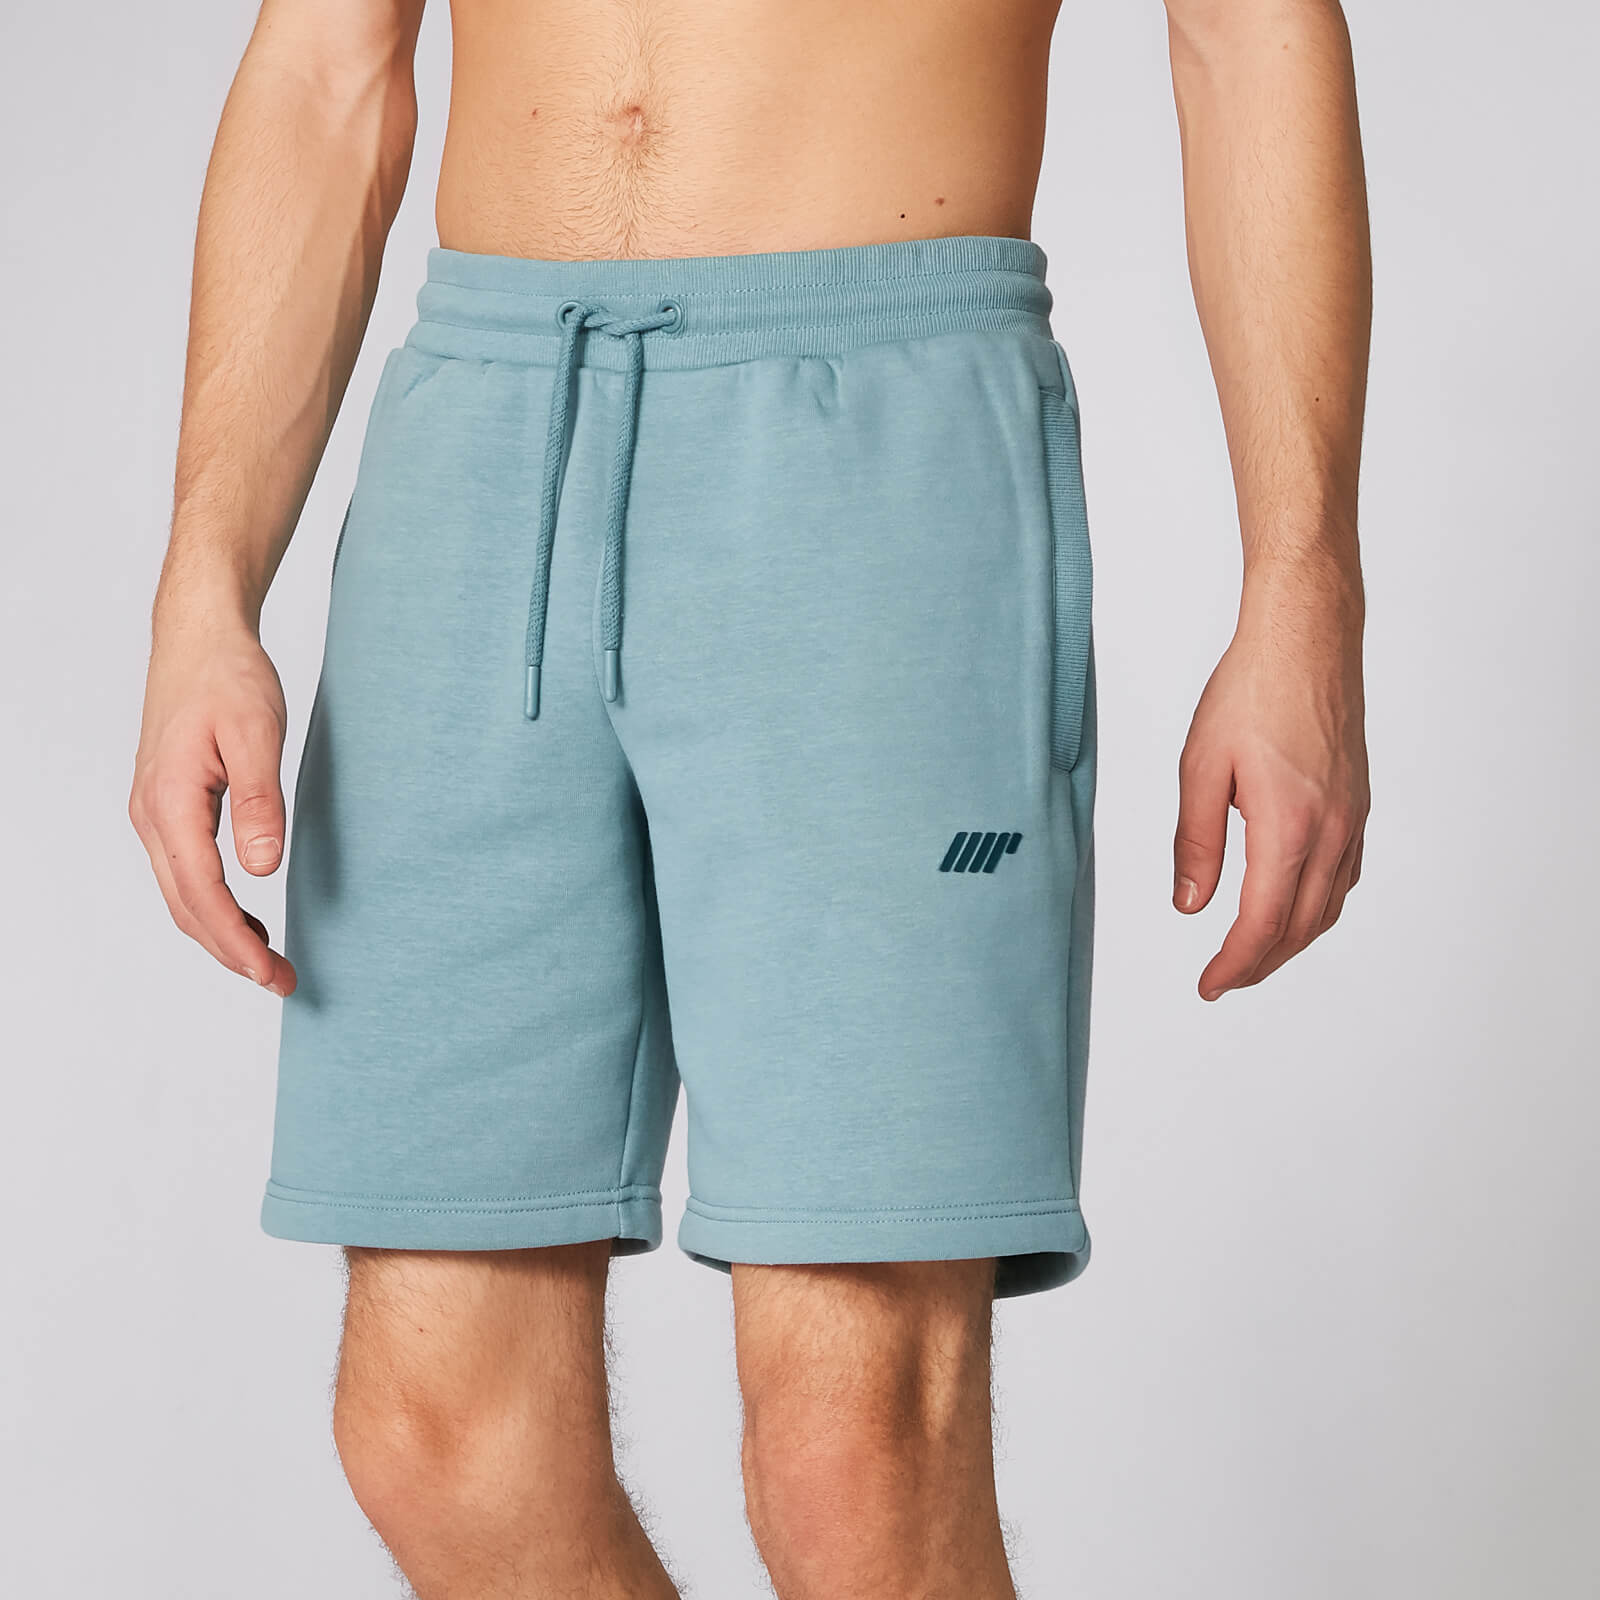 Tru-Fit 修身系列 2.0 男士休閒運動短褲 - 灰藍